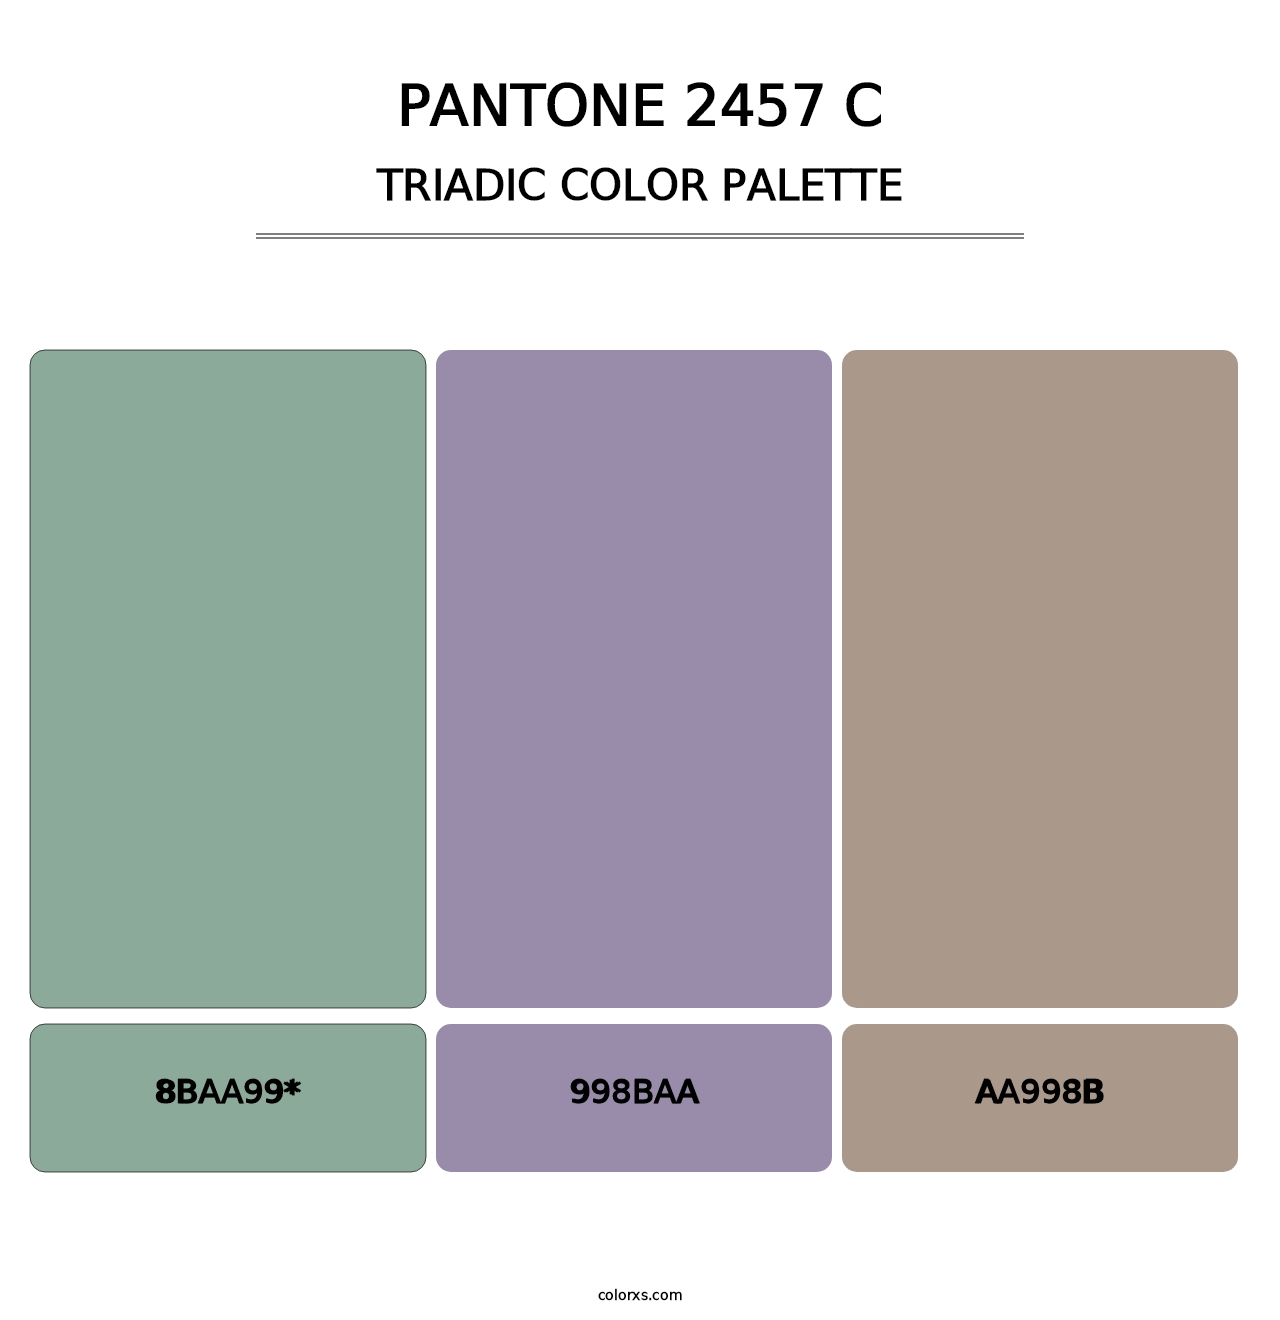 PANTONE 2457 C - Triadic Color Palette